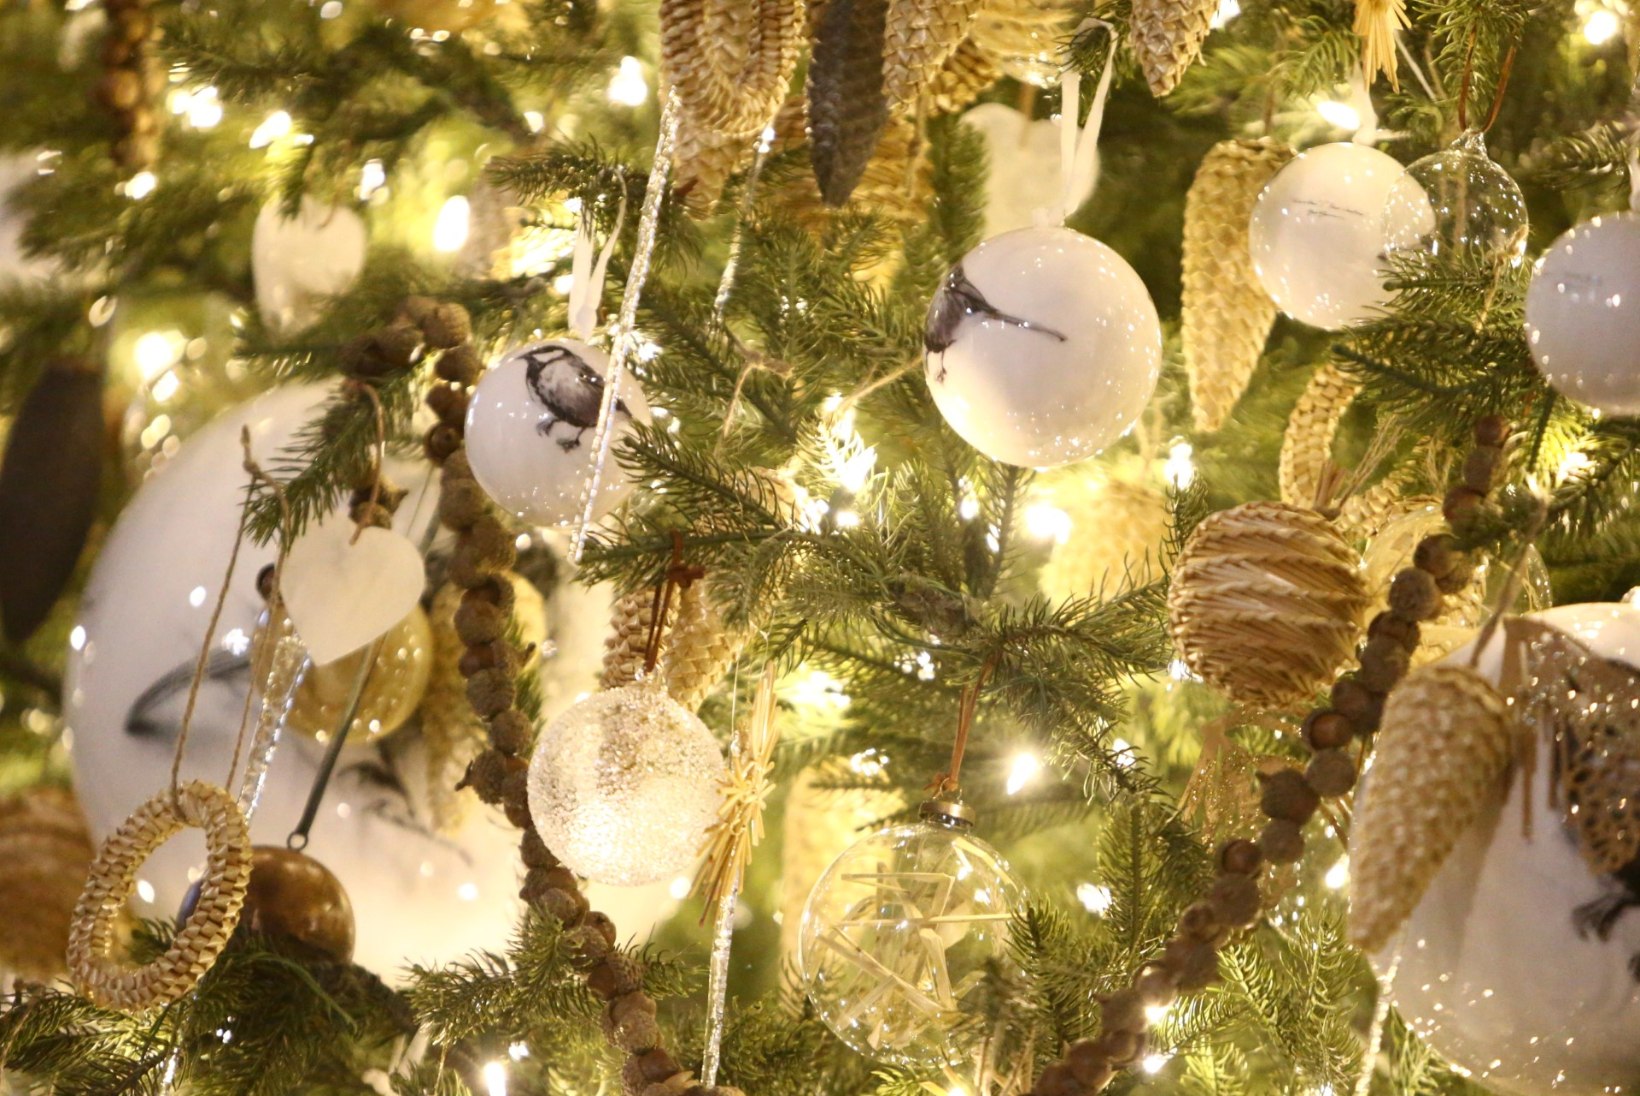 GALERII | Niguliste kirik sai eriti rikkalikult kaunistatud jõulupuu omanikuks